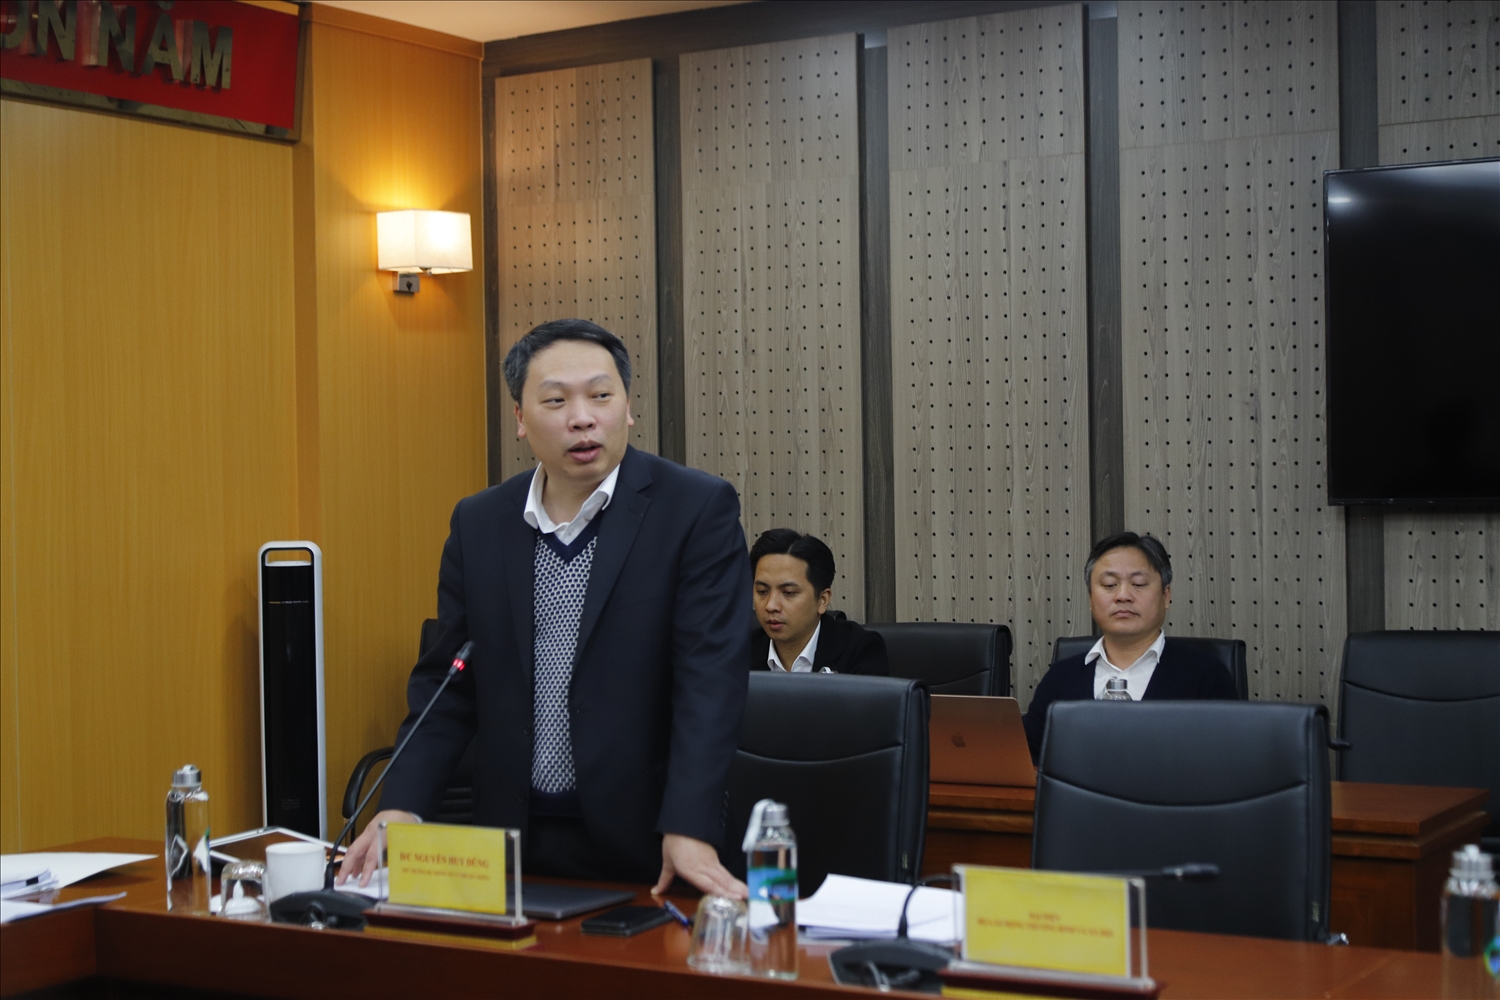 Thứ trưởng Bộ Thông tin và Truyền thông Nguyễn Huy Dũng phát biểu tại Hội thảo